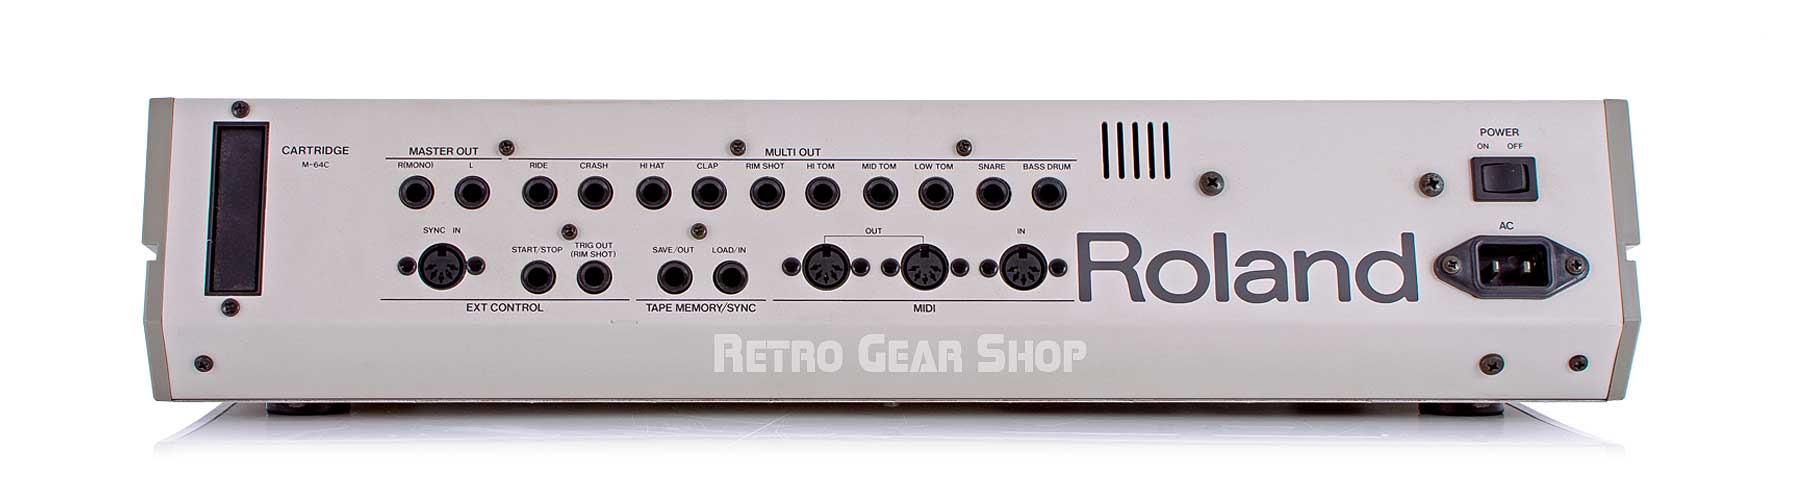 Roland TR-909 + Original Box Rear